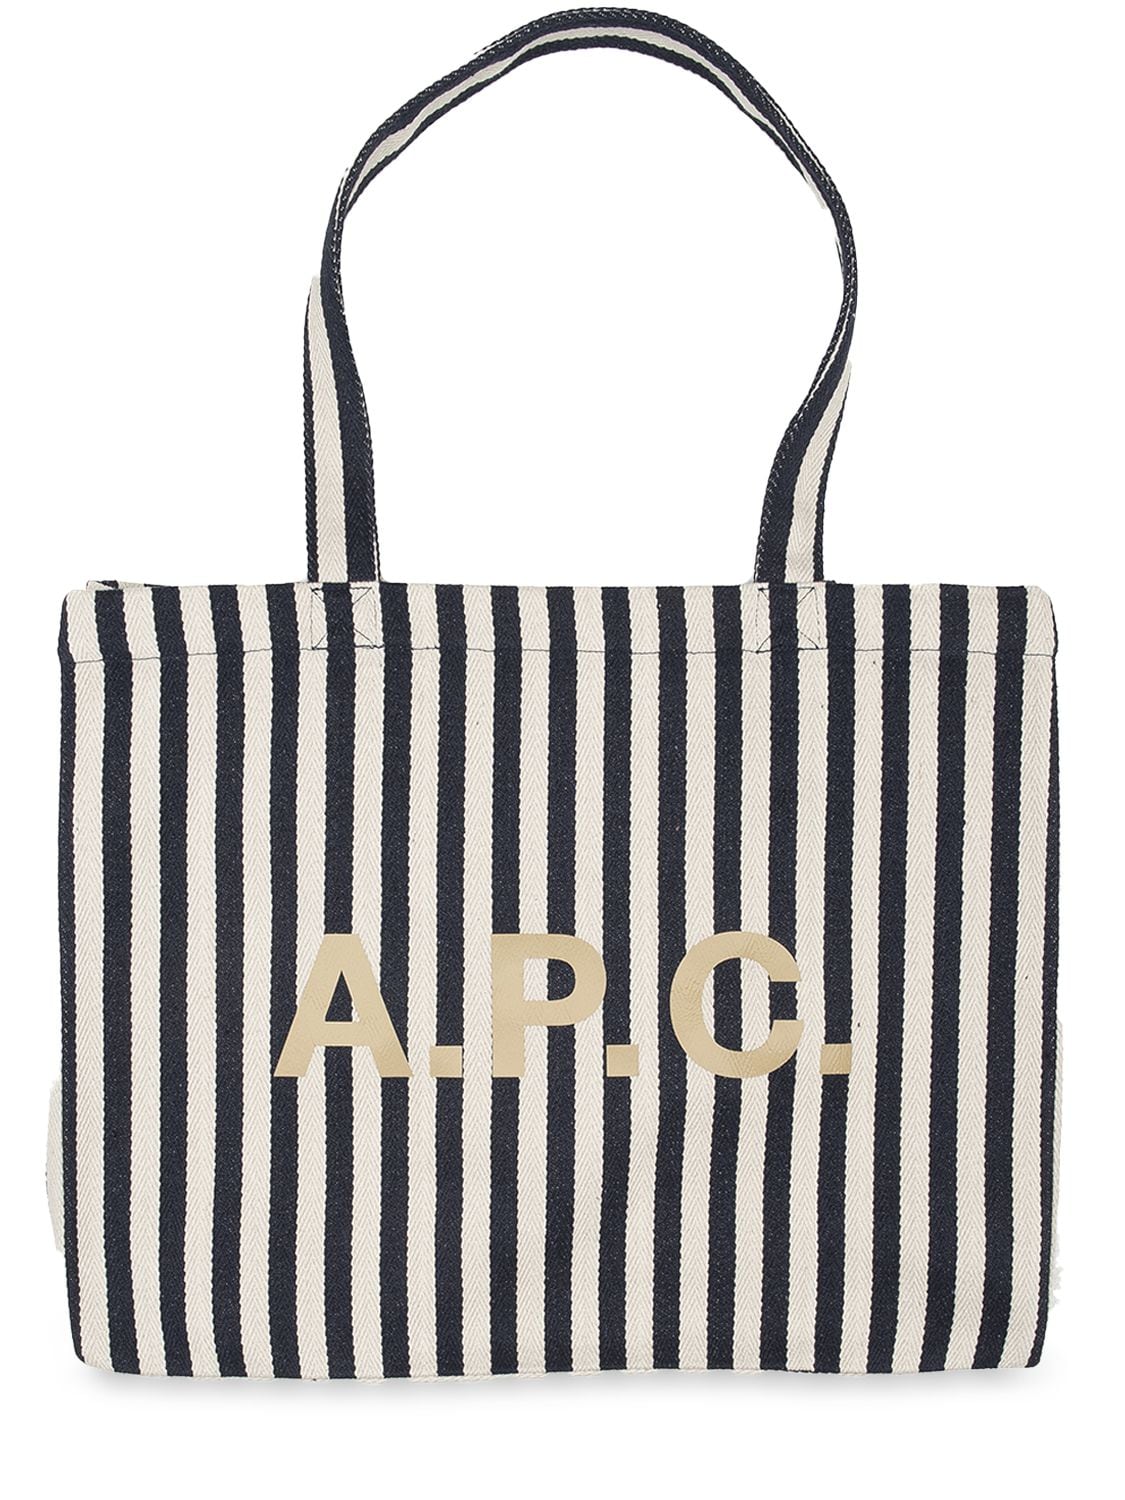 A.P.C. Striped Cotton Canvas Tote Bag